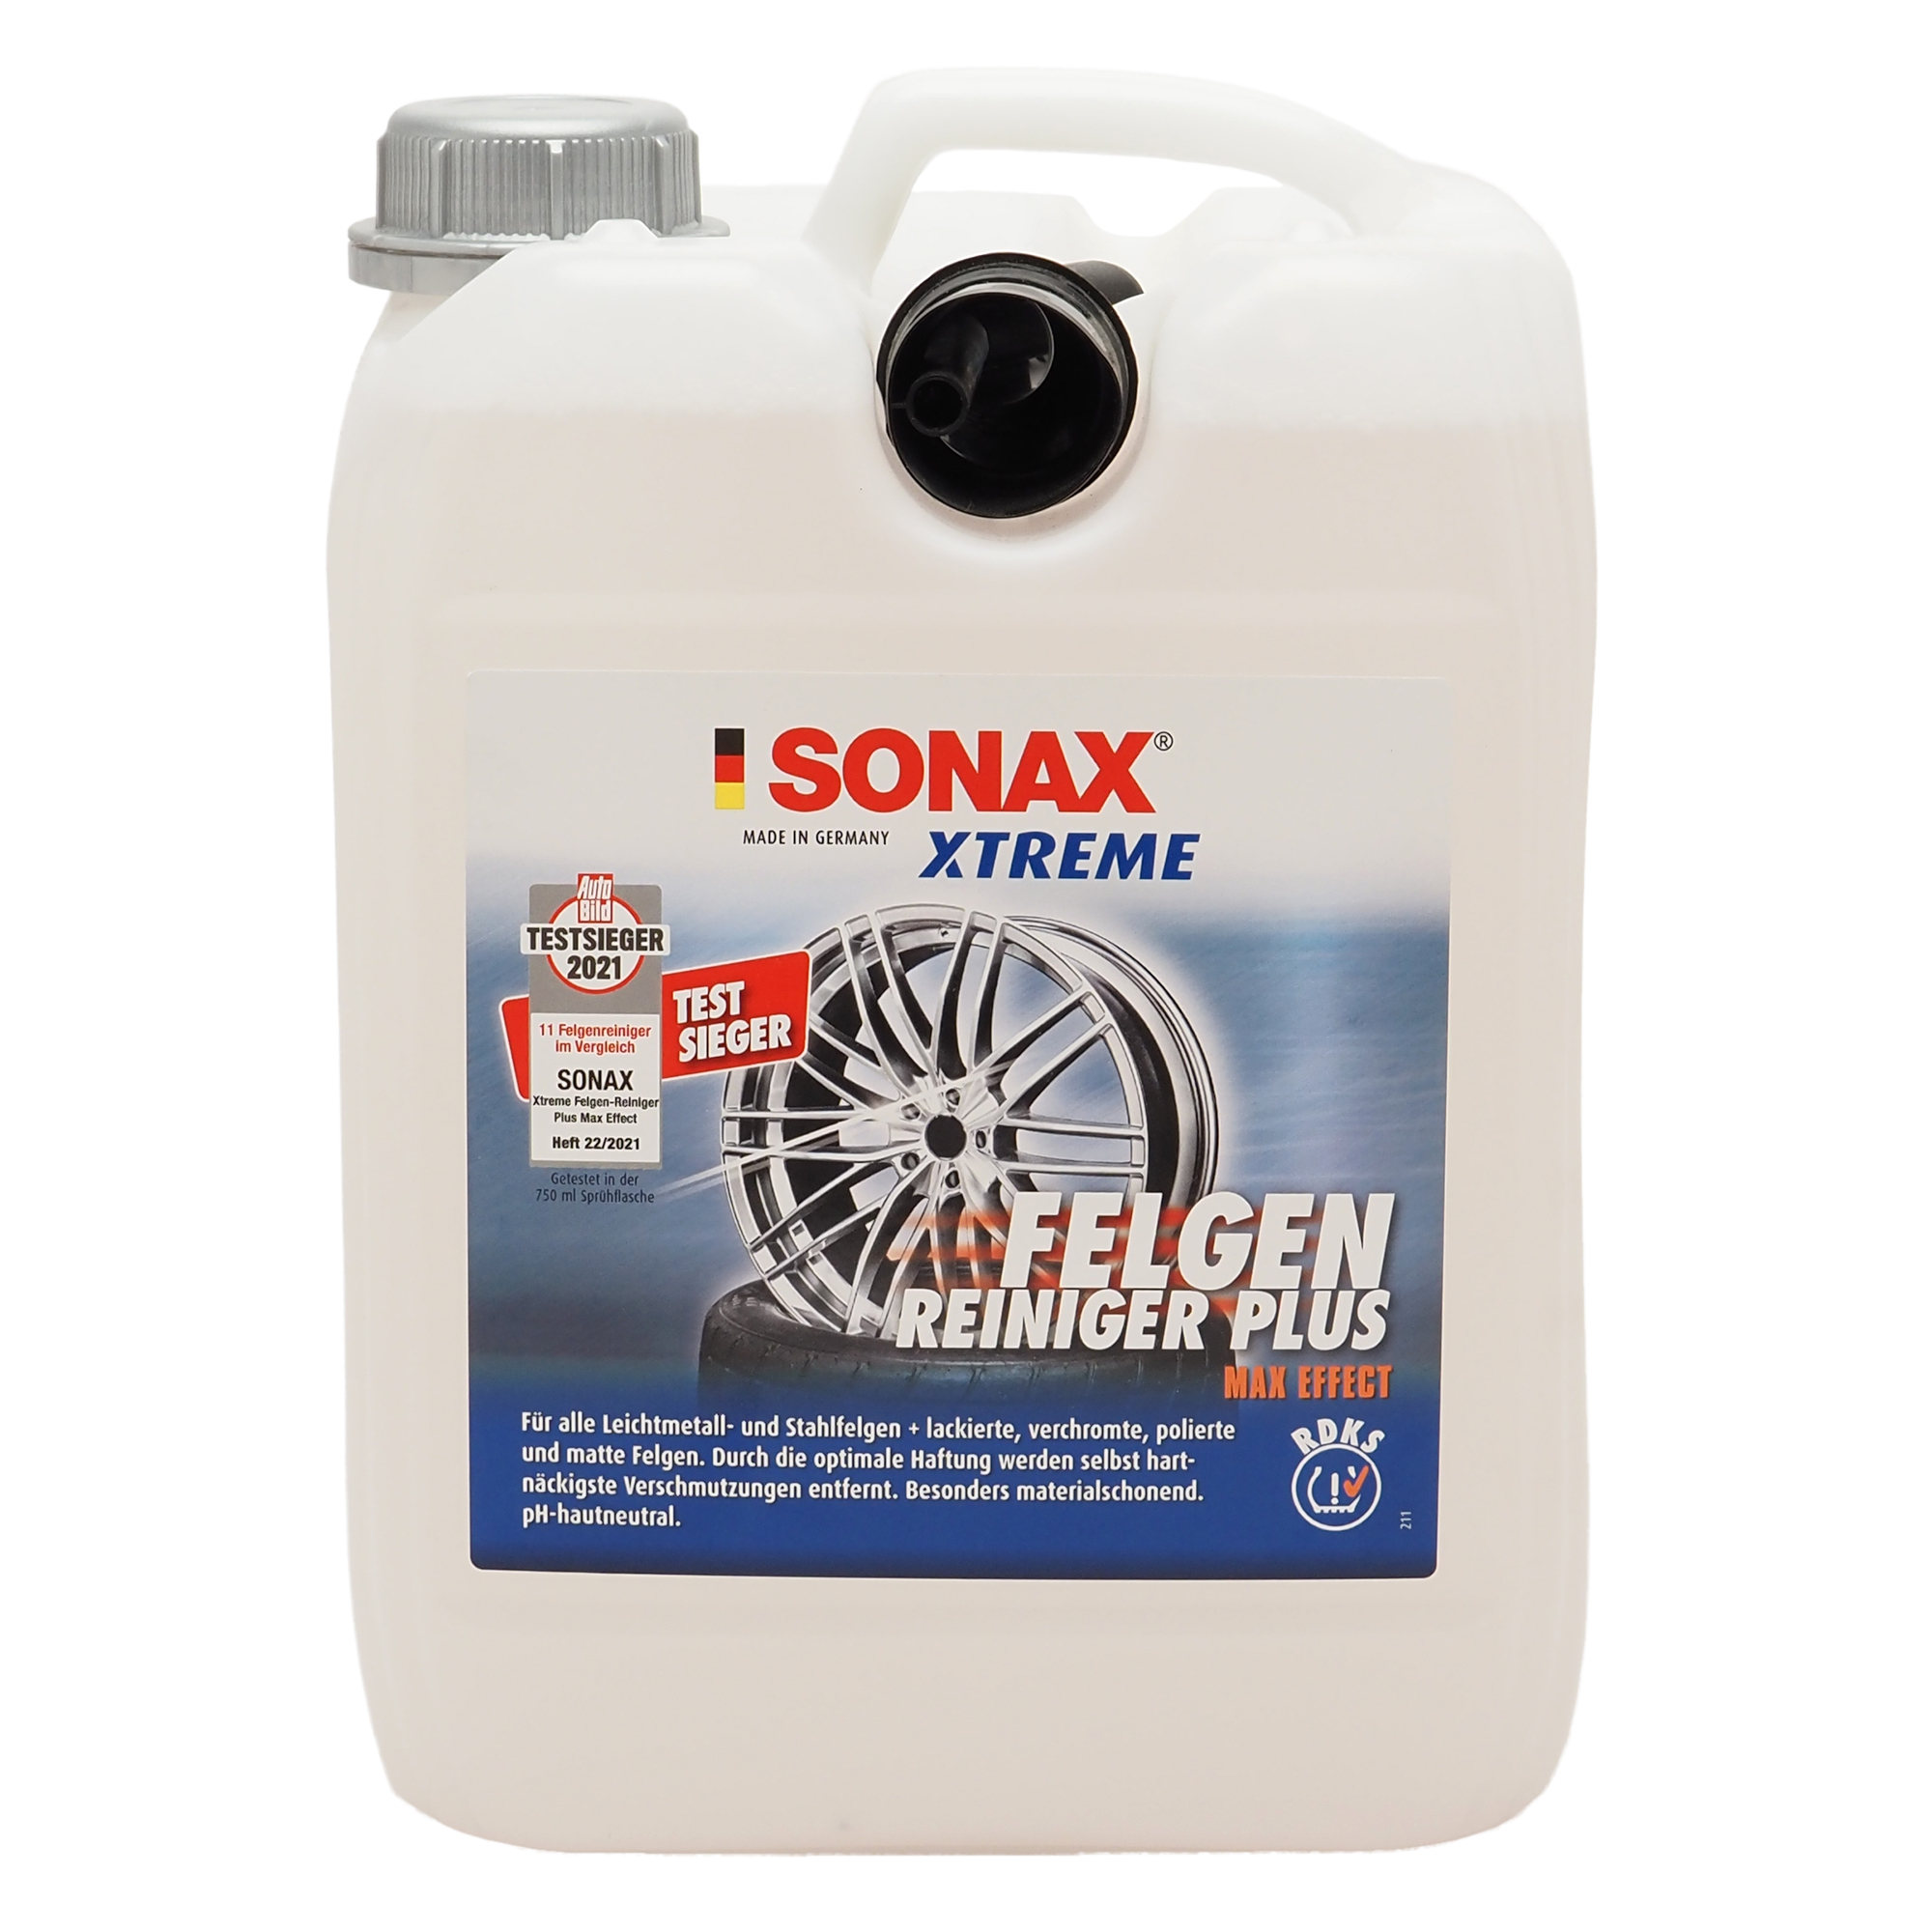 SONAX Xtreme FelgenReiniger PLUS 5 l - Felgenreiniger - Felgen &  Reifenpflege - Pflege & Wartung 